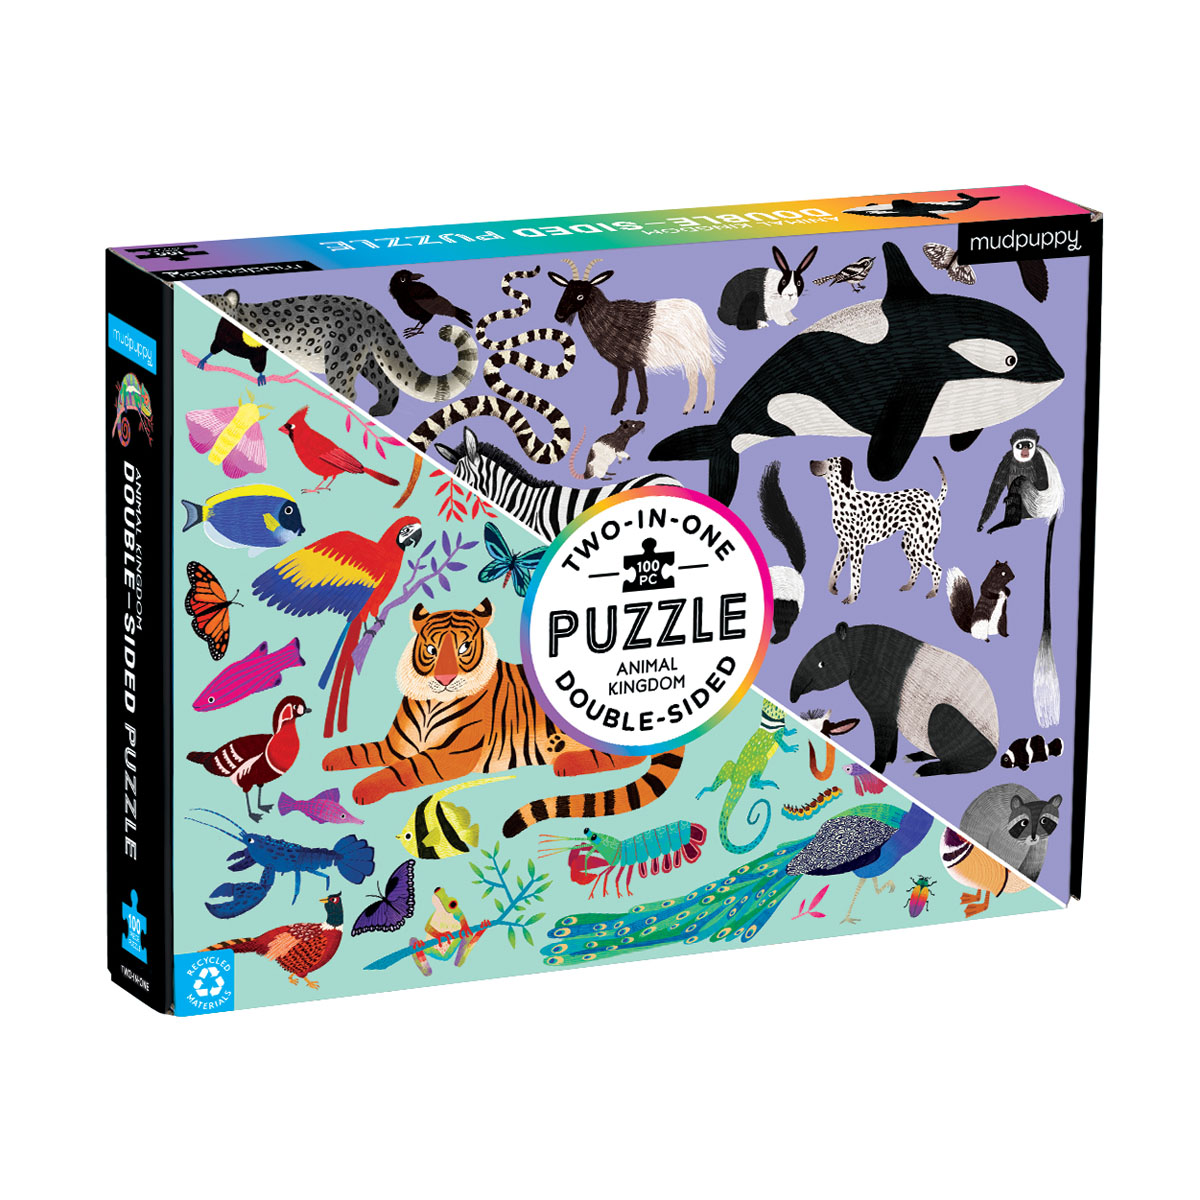 Pouch Puzzle Set: Rainforest & Woodland Picnic - Mudpuppy Puzzles